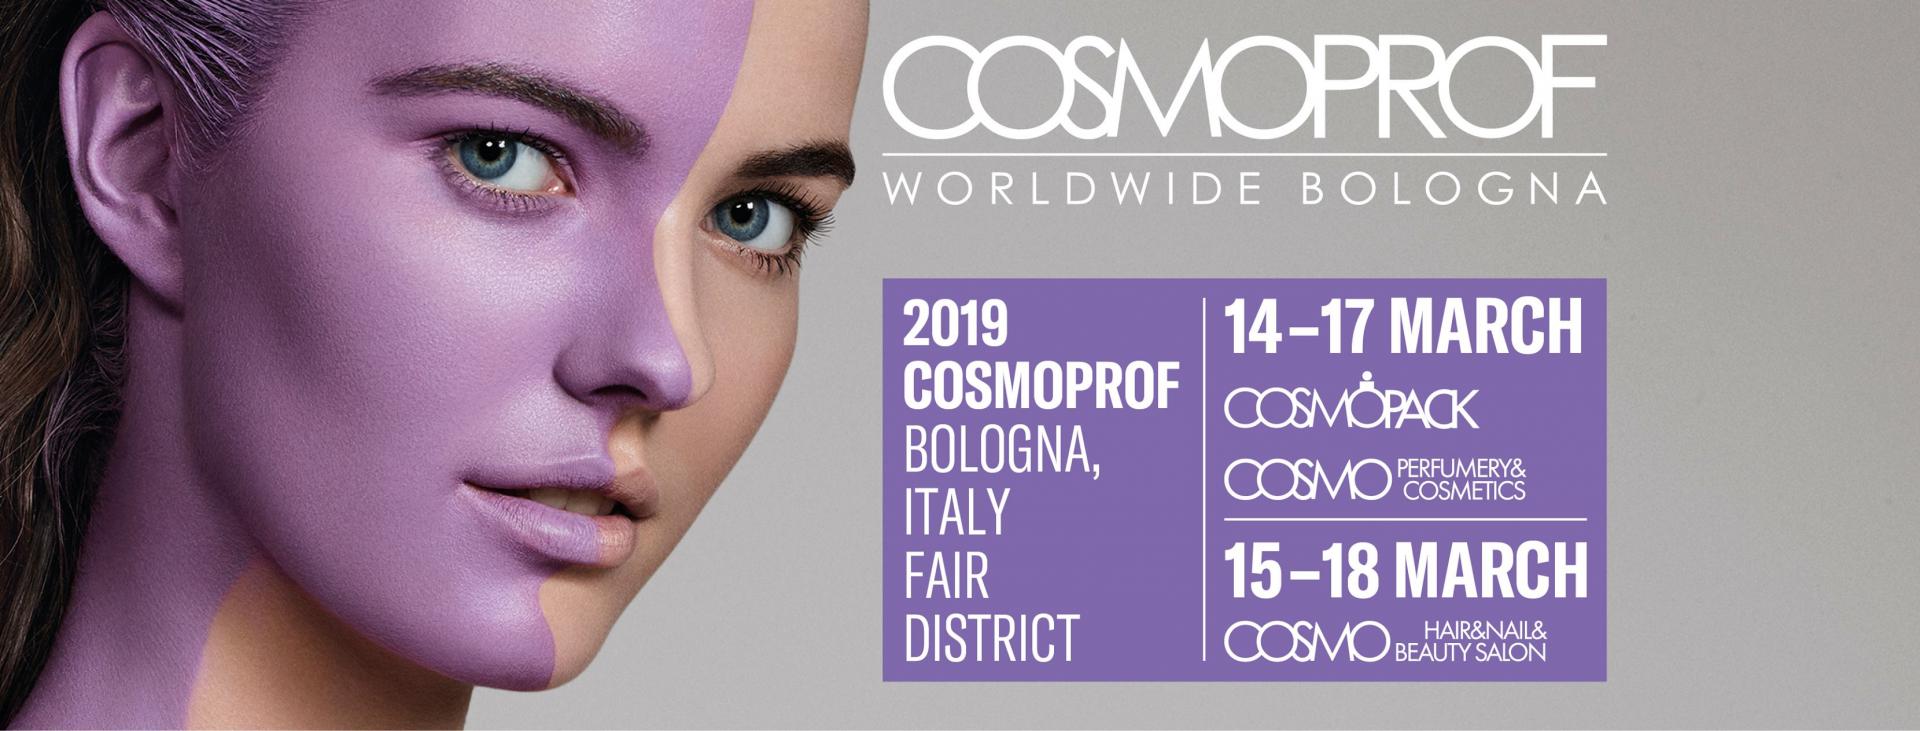 Organizatorzy zaprzeczają plotkom o odwołaniu targów Cosmoprof Bolonia z powodu koronawirusa